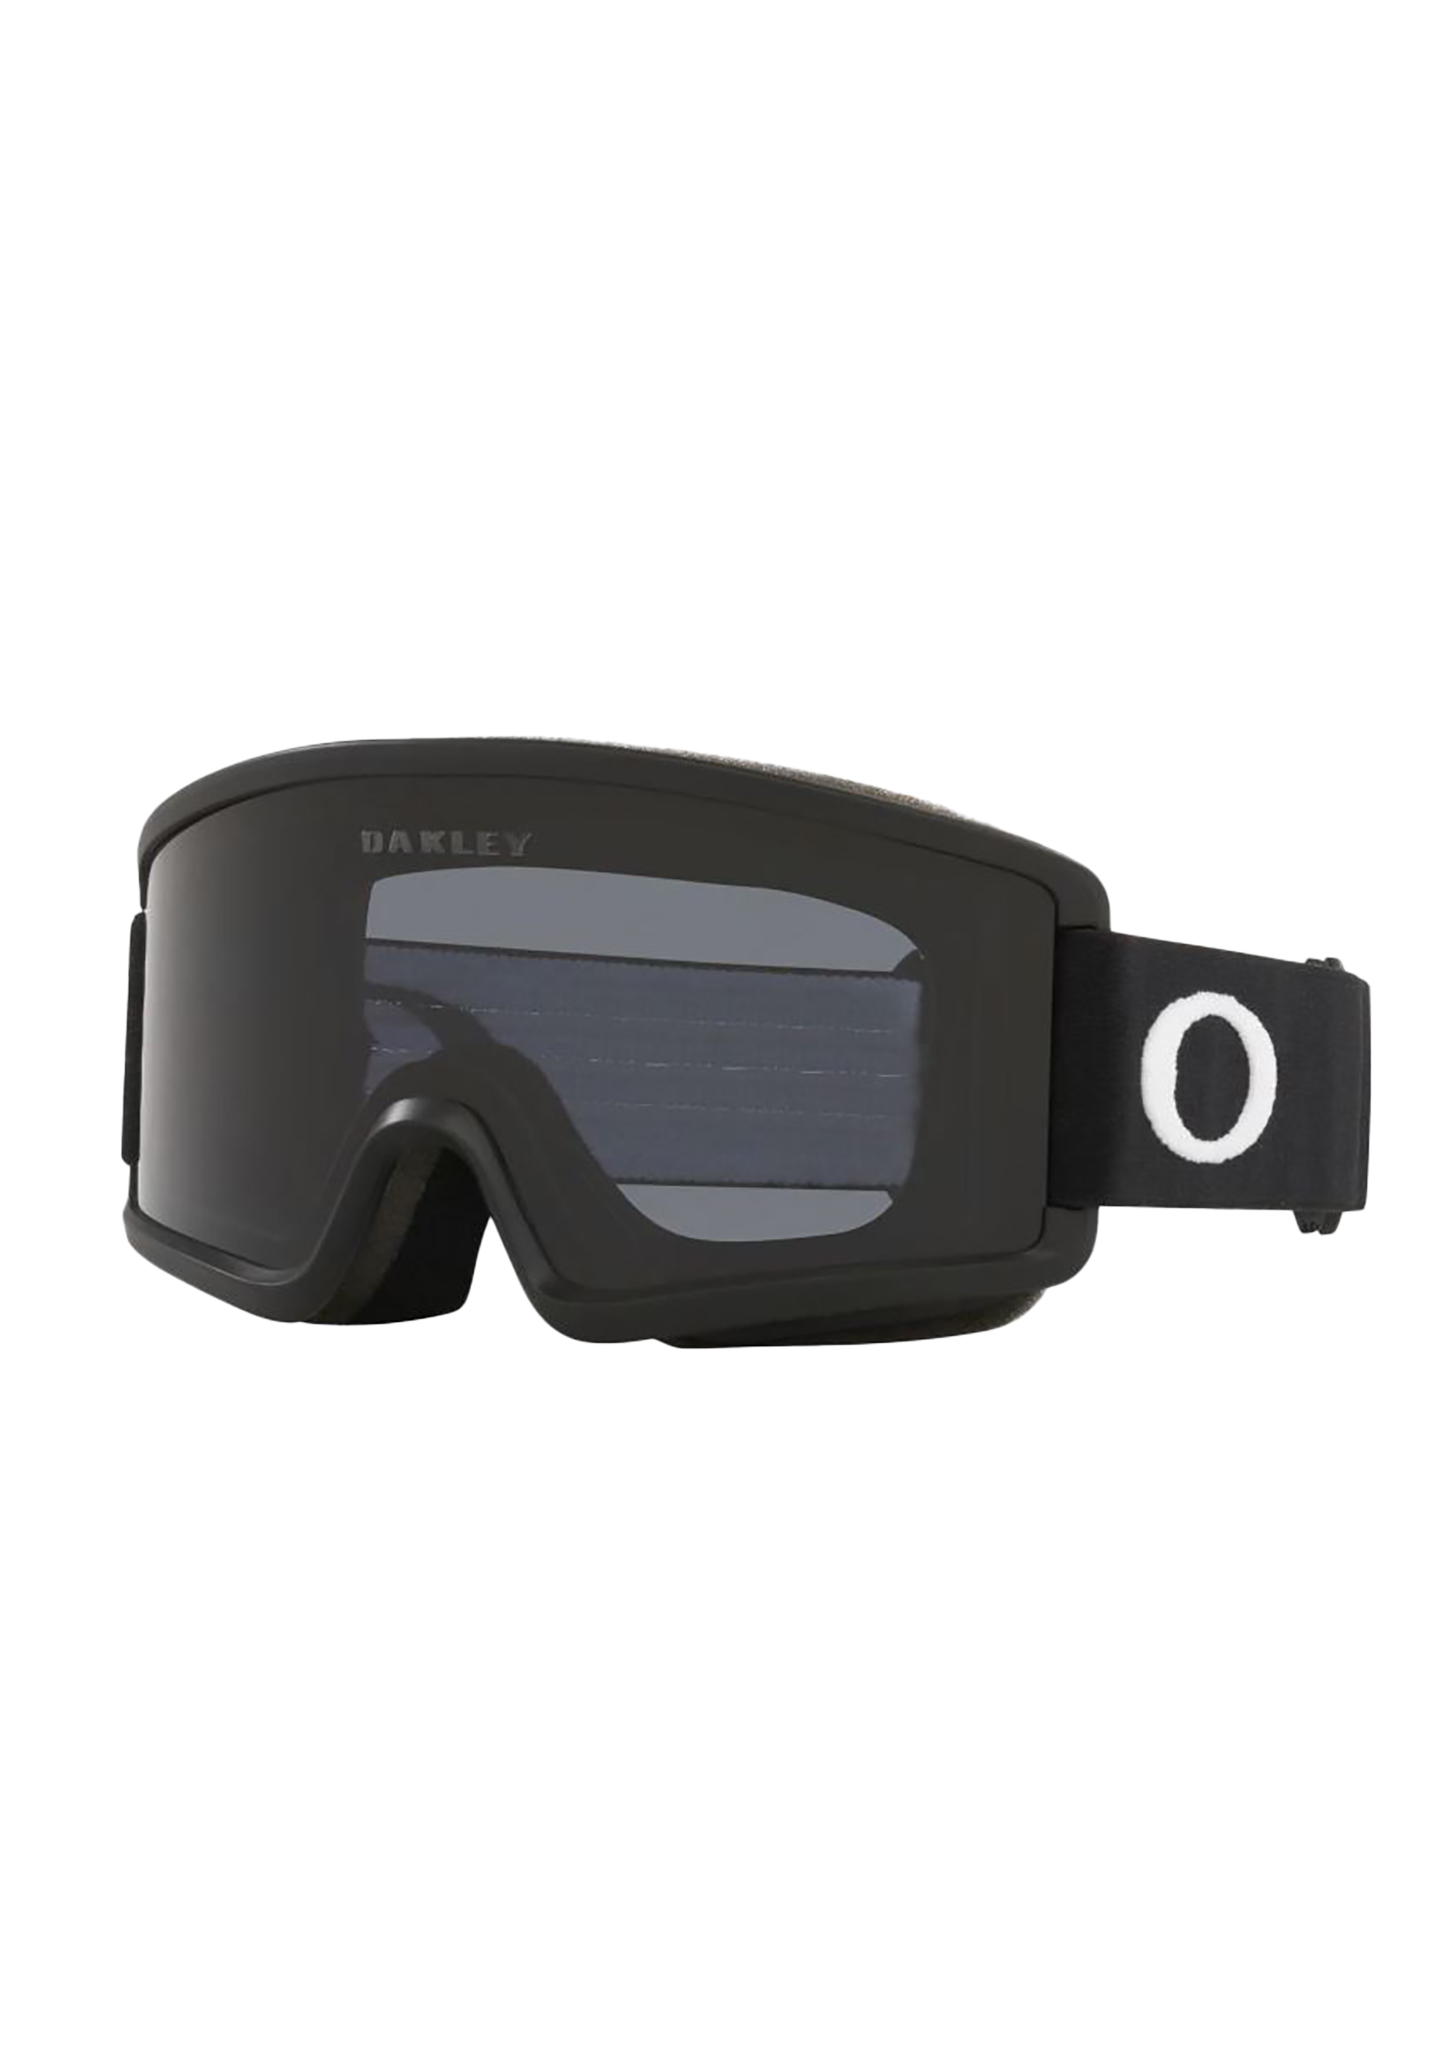 Oakley Target Line S Snowboardbrillen mattschwarz/dunkelgrau One Size